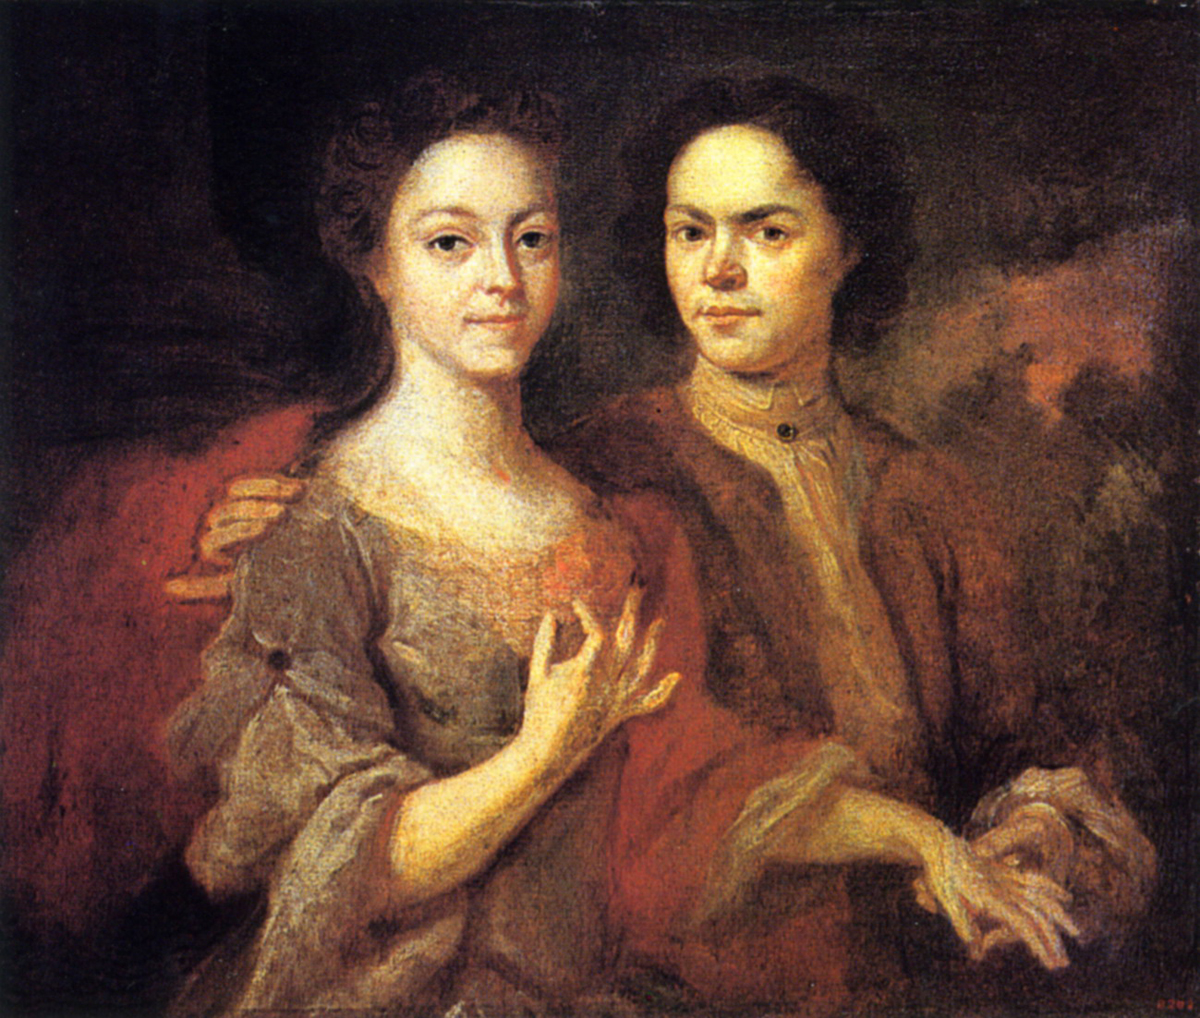 Матвеев А. М. Автопортрет с женой. 1729